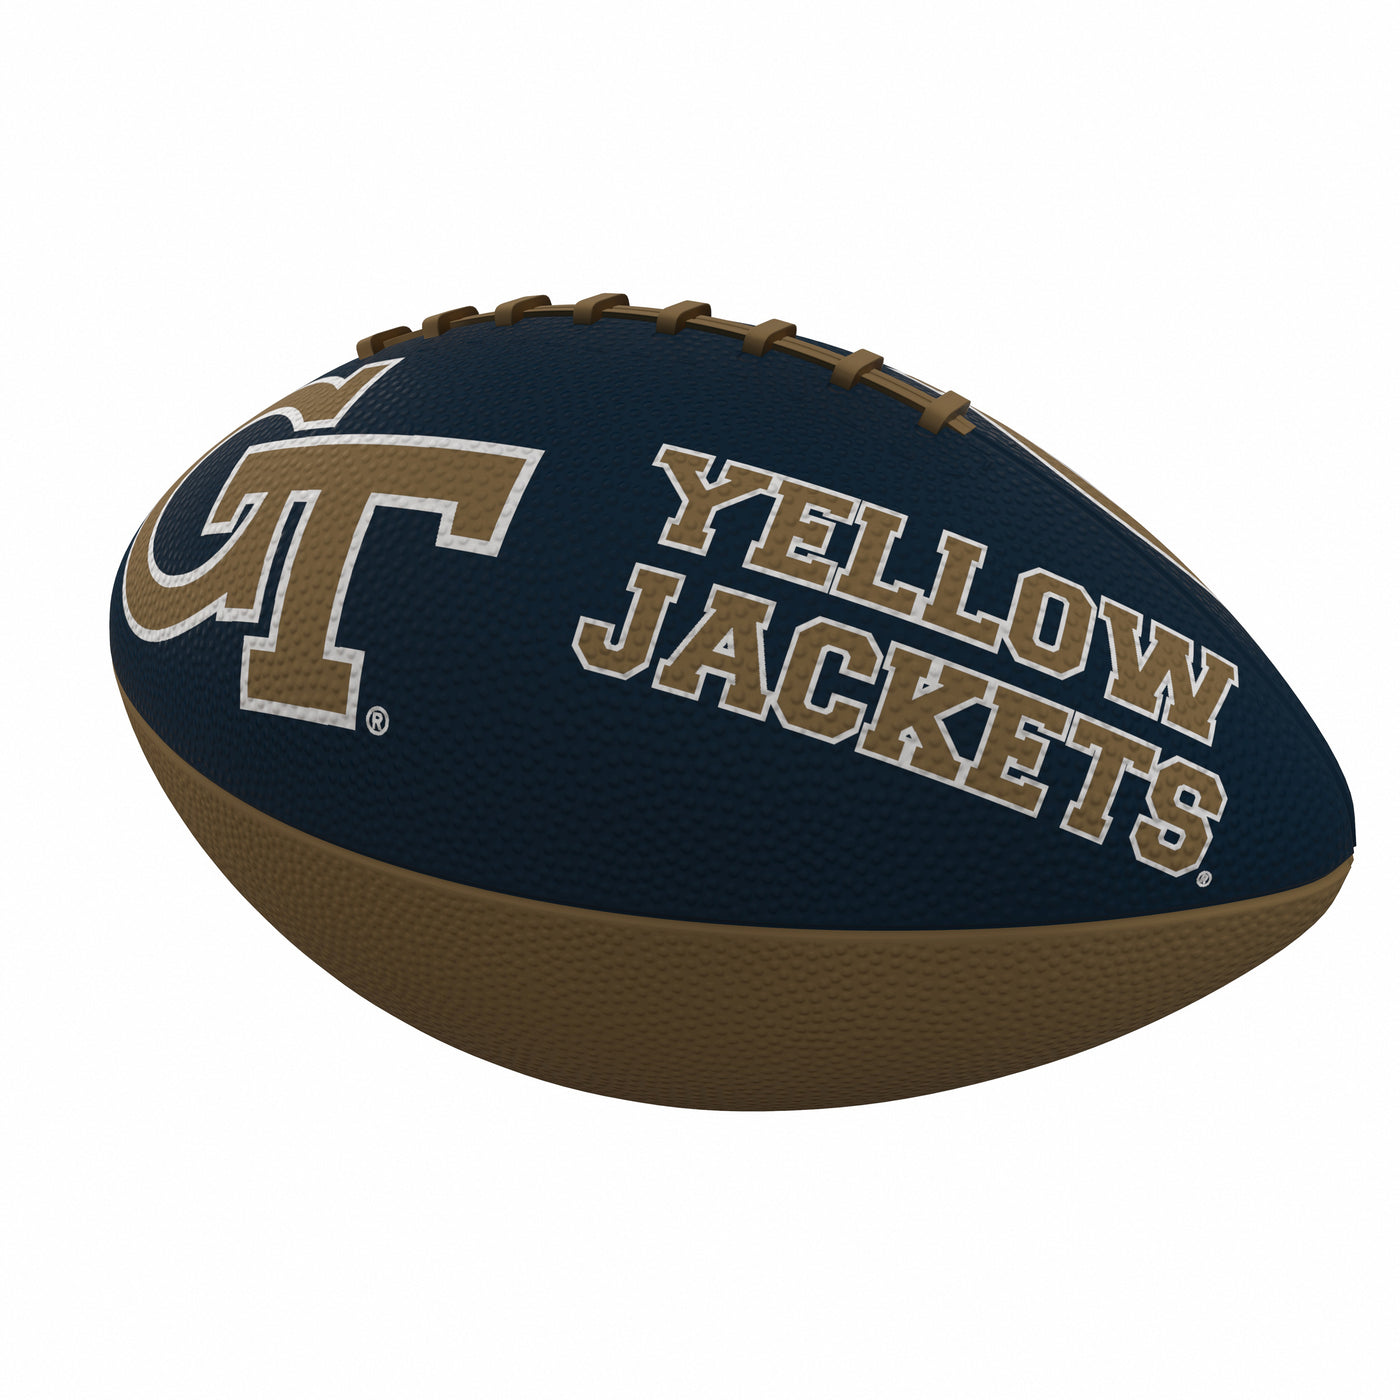 GA Tech Combo Logo Junior-Size Rubber Football